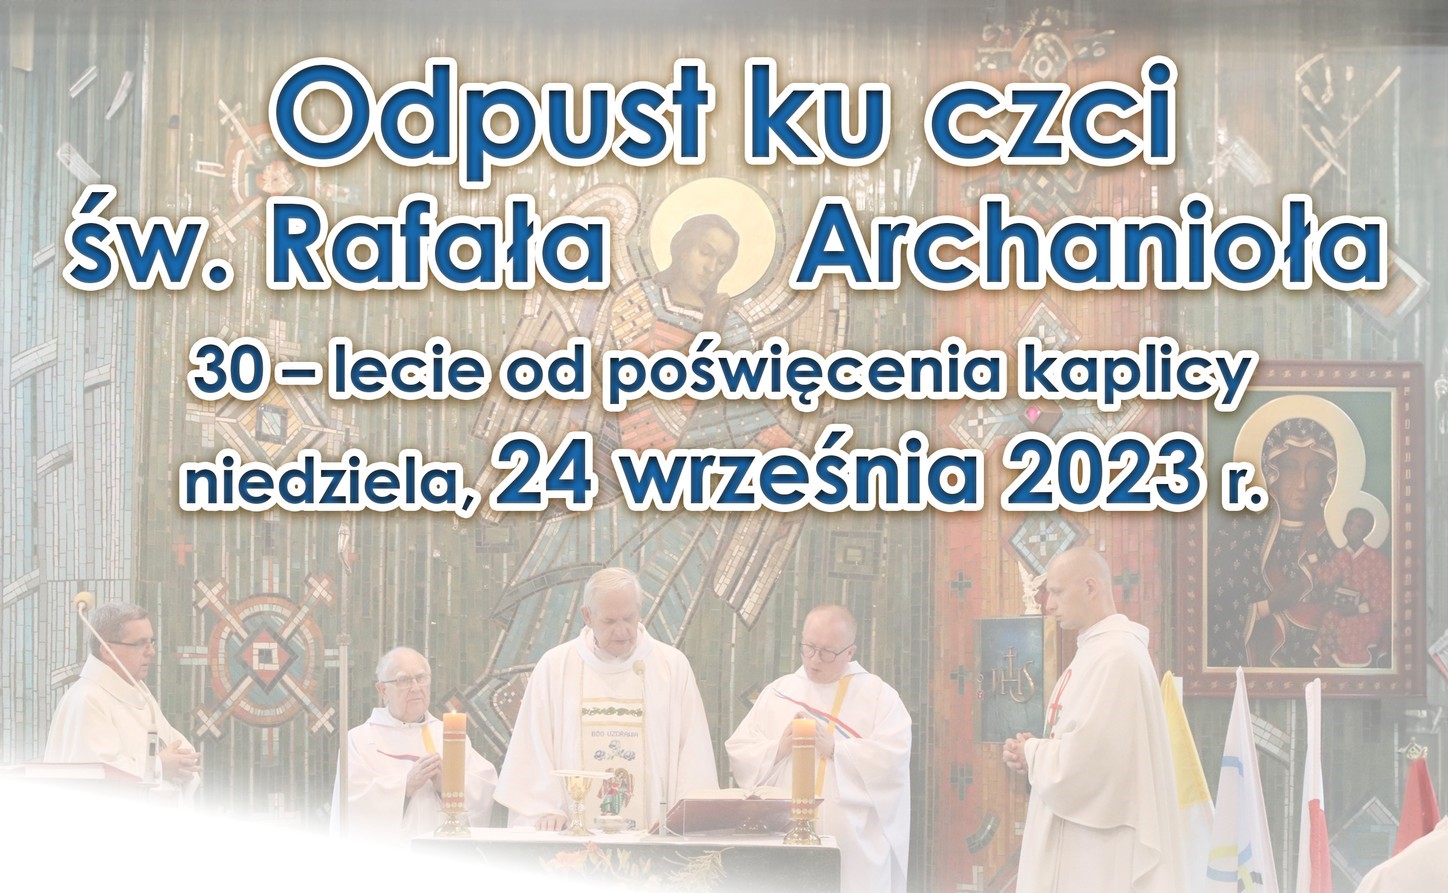 Odpust ku czci św. Rafała Archanioła w Rusinowicach - 30-lecie poświęcenia kaplicy 